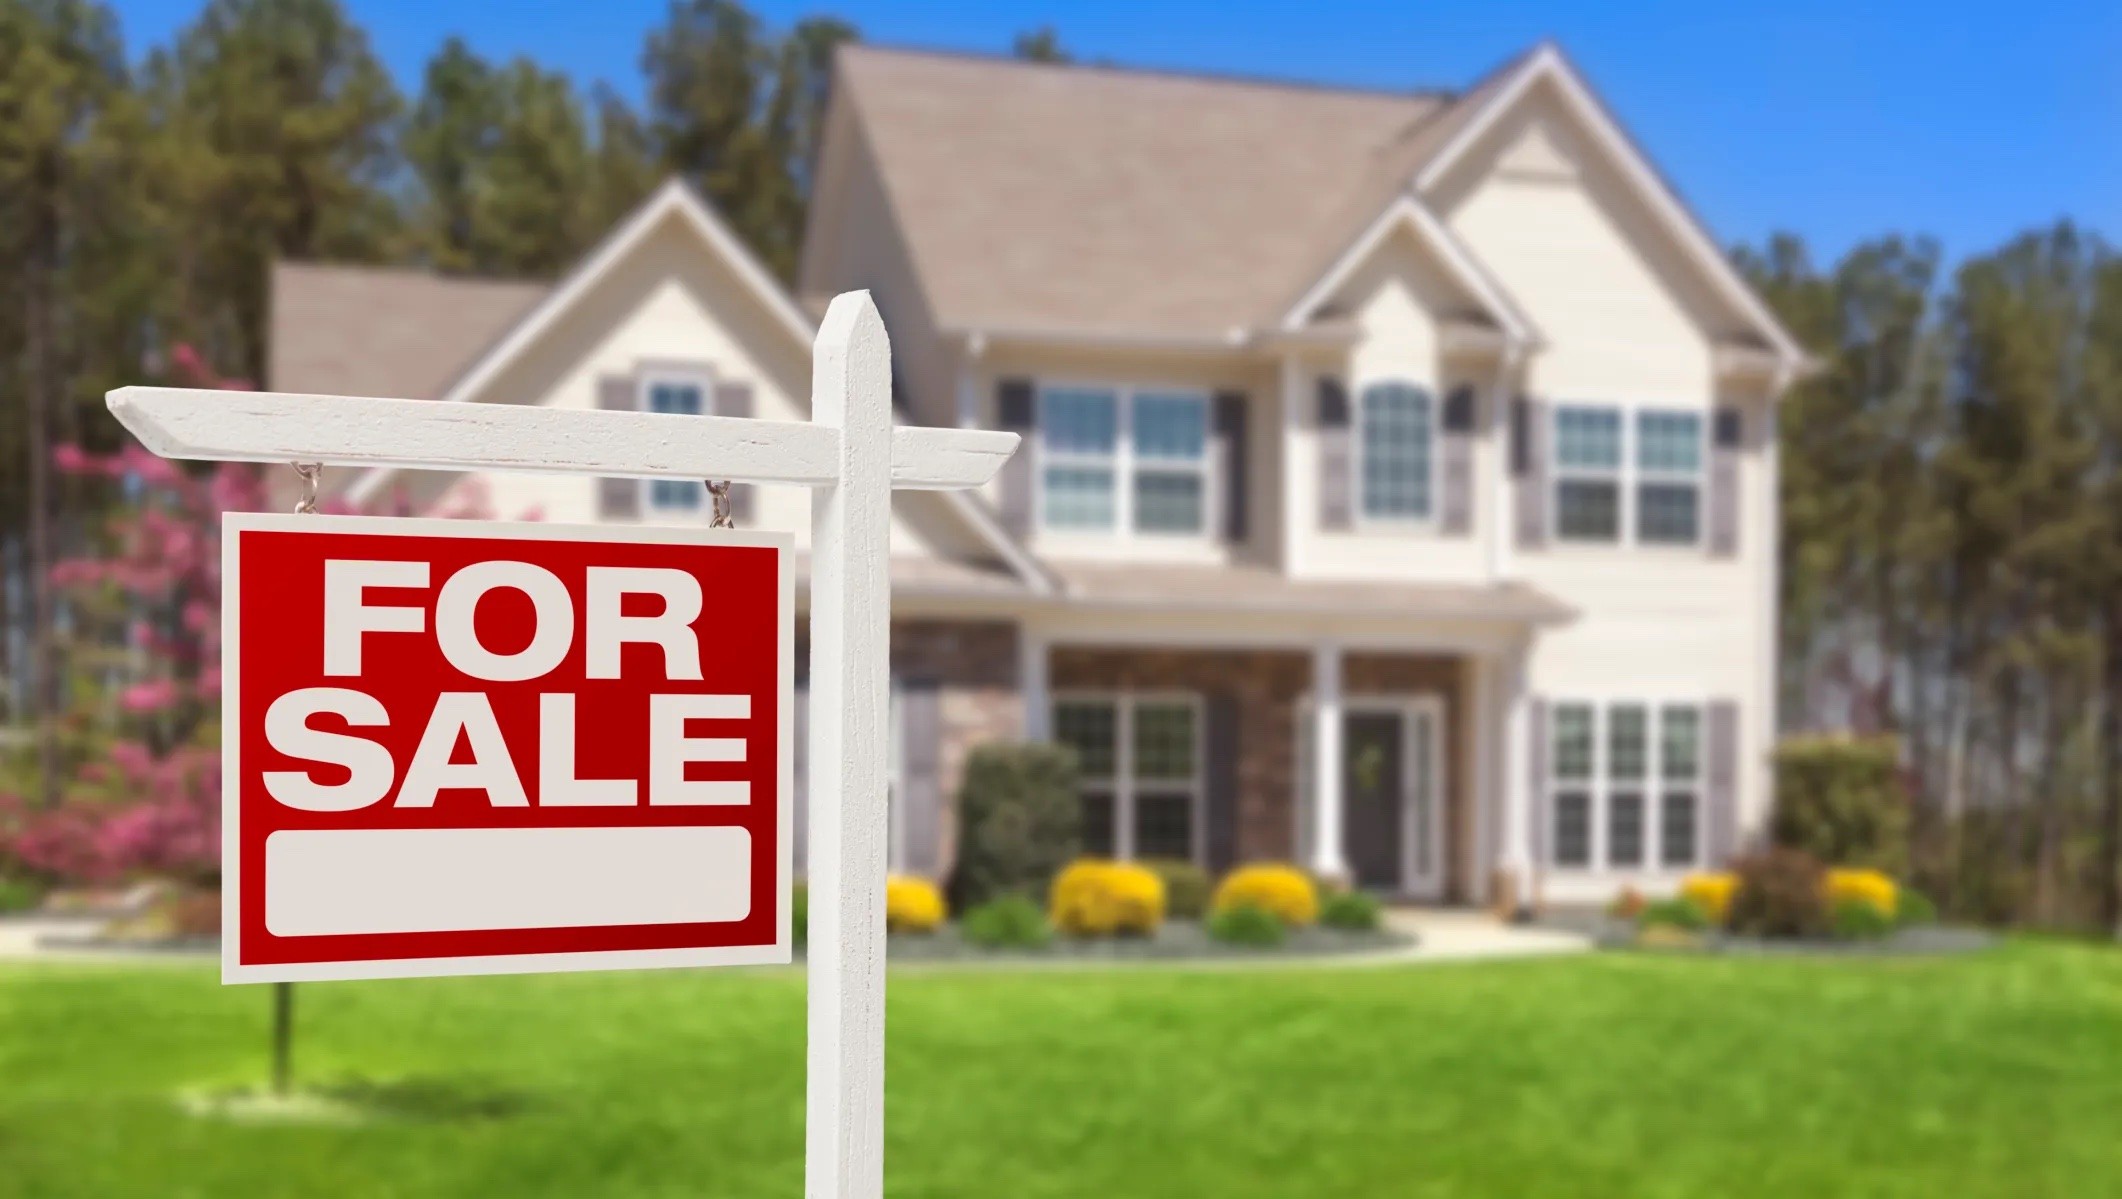 
Ở Mỹ, ngày càng có nhiều người có thu nhập cao ngần ngại trong việc mua nhà vì mức giá cao kỷ lục, cùng với đó là lãi suất thế chấp tăng và nguồn cung eo hẹp.
